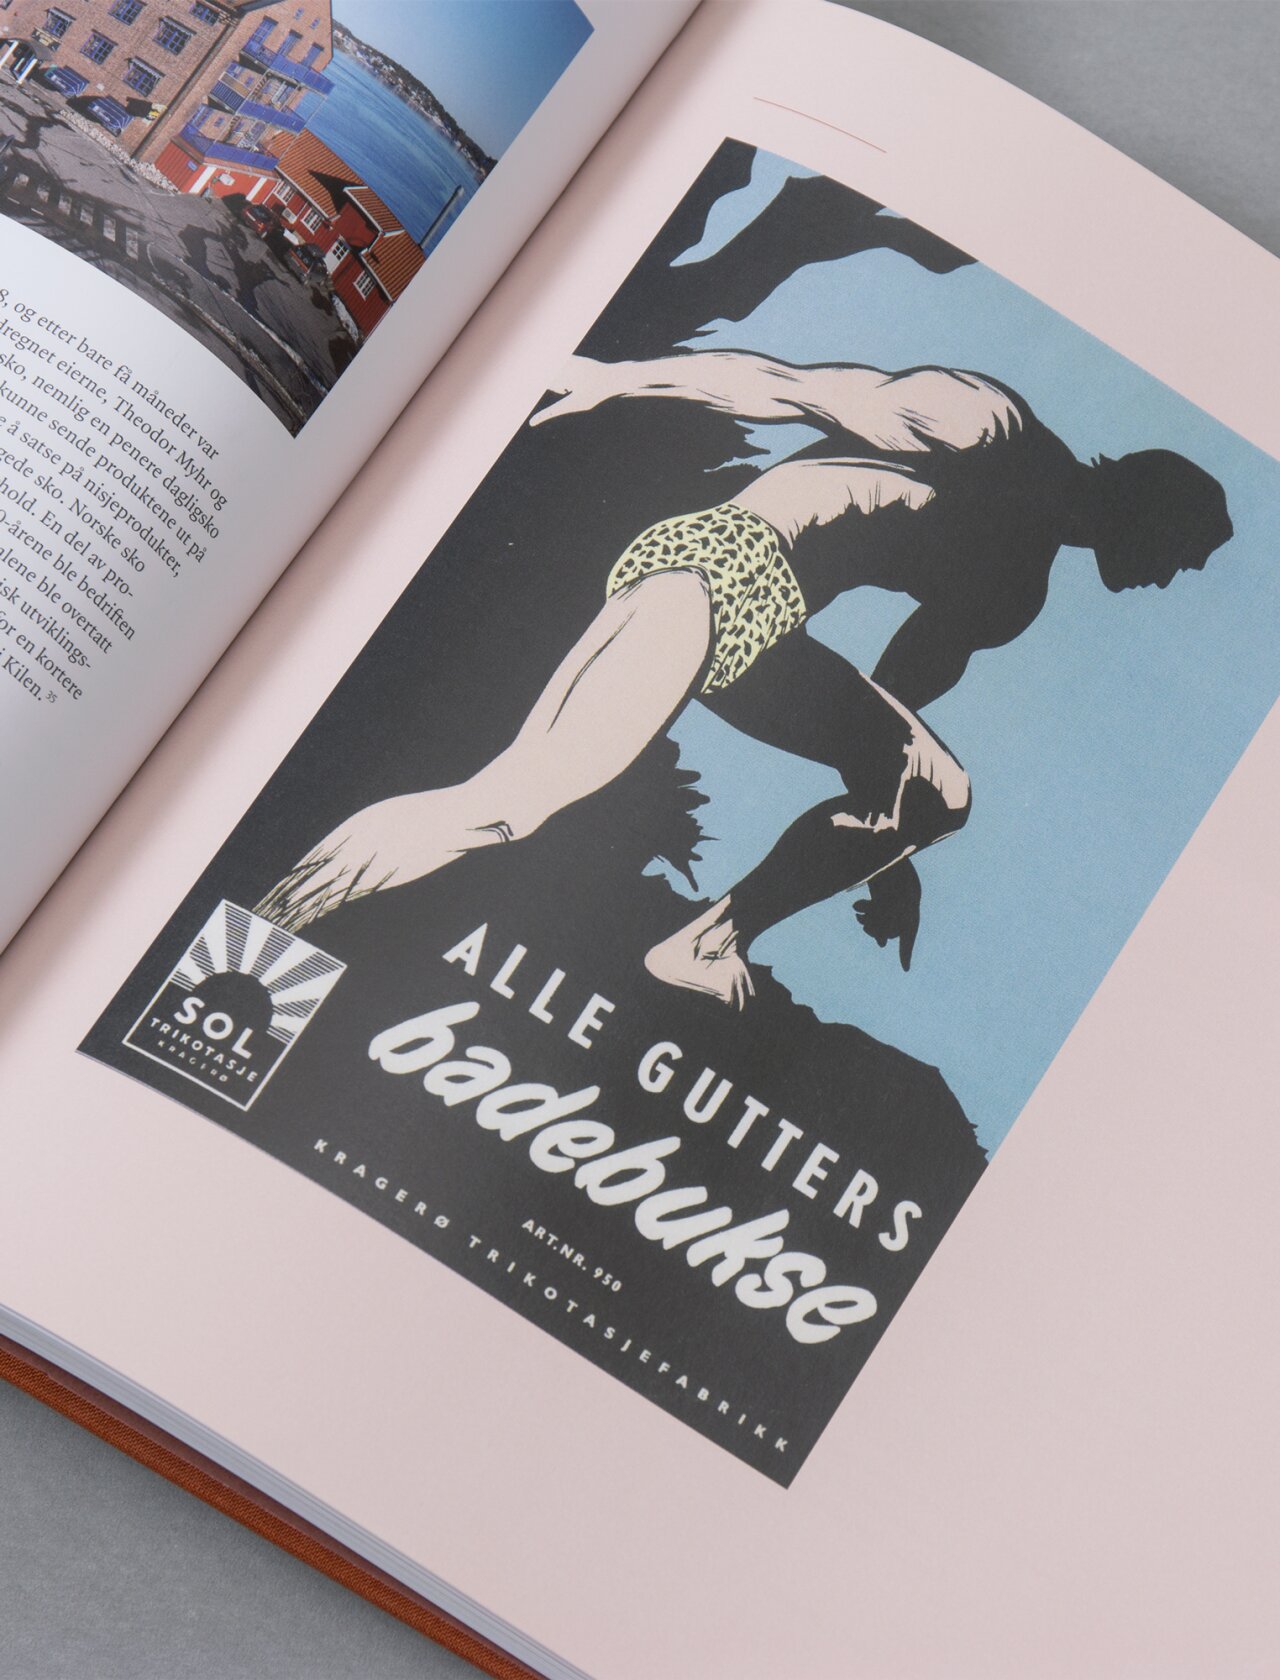 Bilde i bok som viser gammel annonse fra Kragerø trikotasjefabrikk